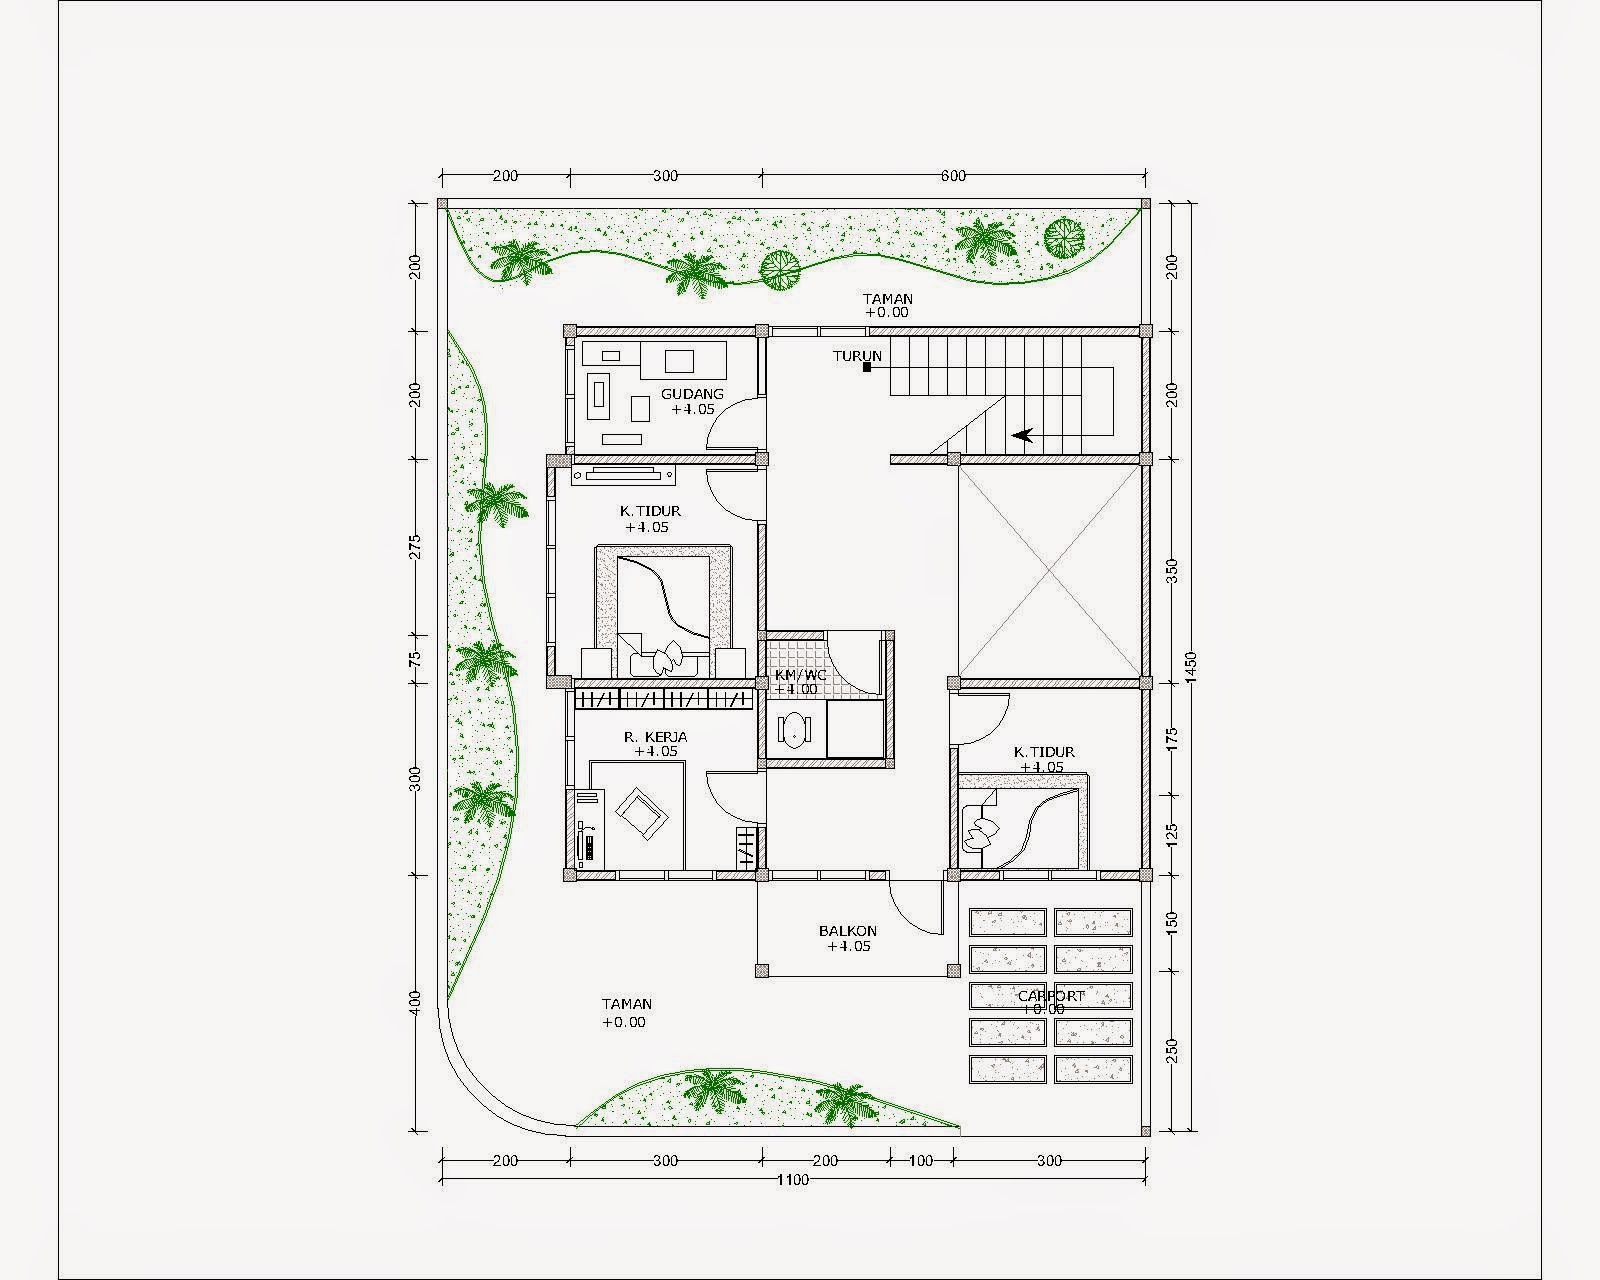 107 Denah  Rumah Minimalis Format Autocad  Gambar  Desain 